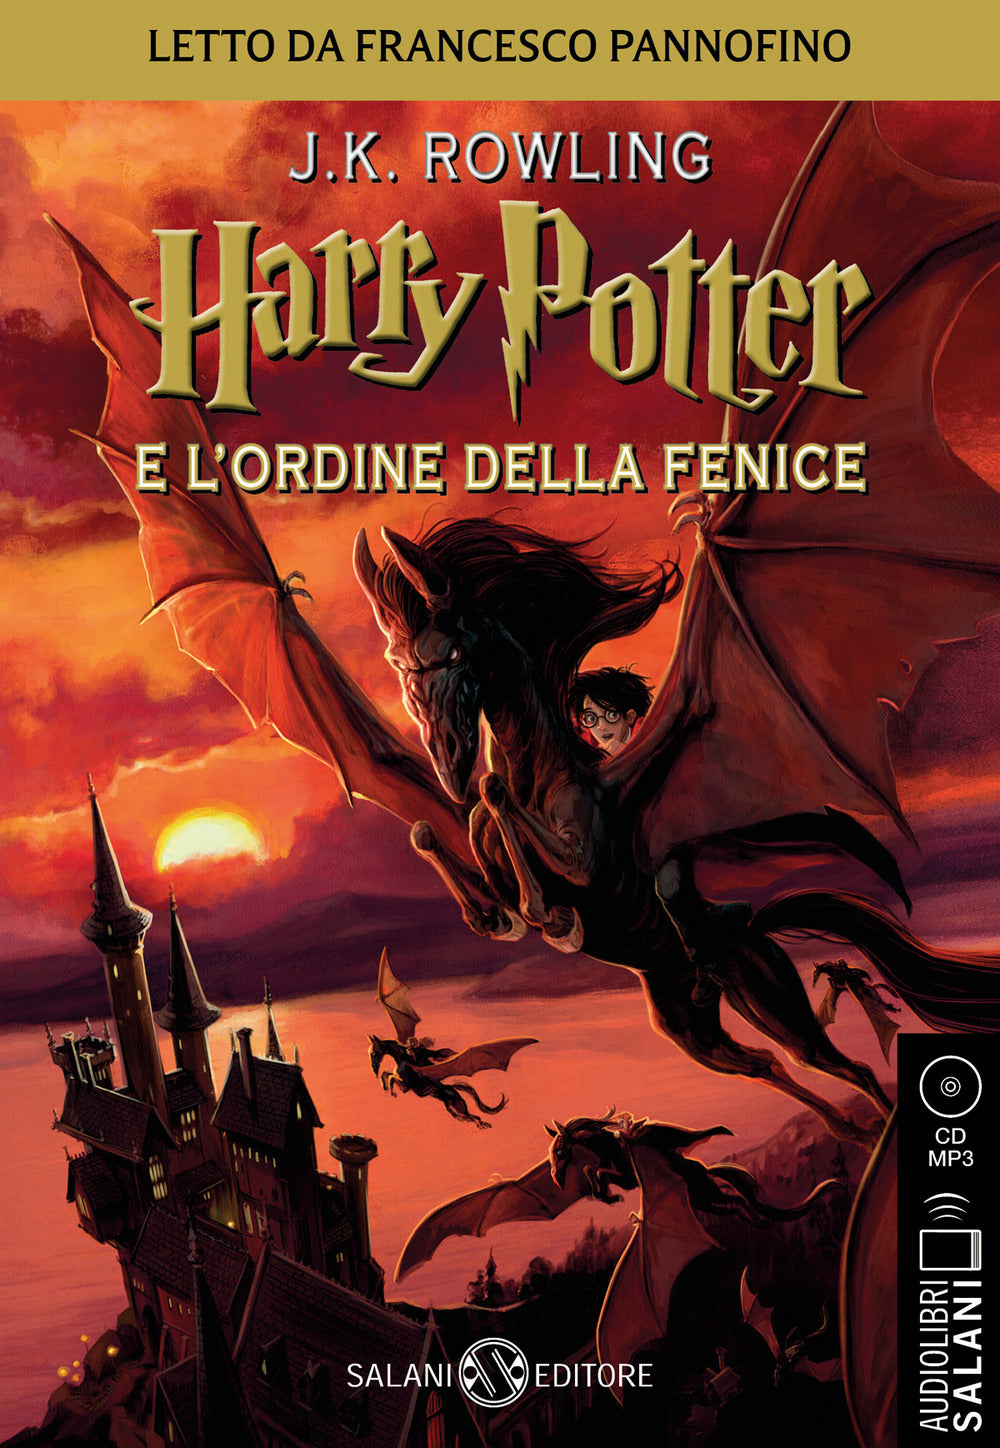 Harry Potter e l'Ordine della Fenice letto da Francesco Pannofino. Audiolibro. CD Audio formato MP3.